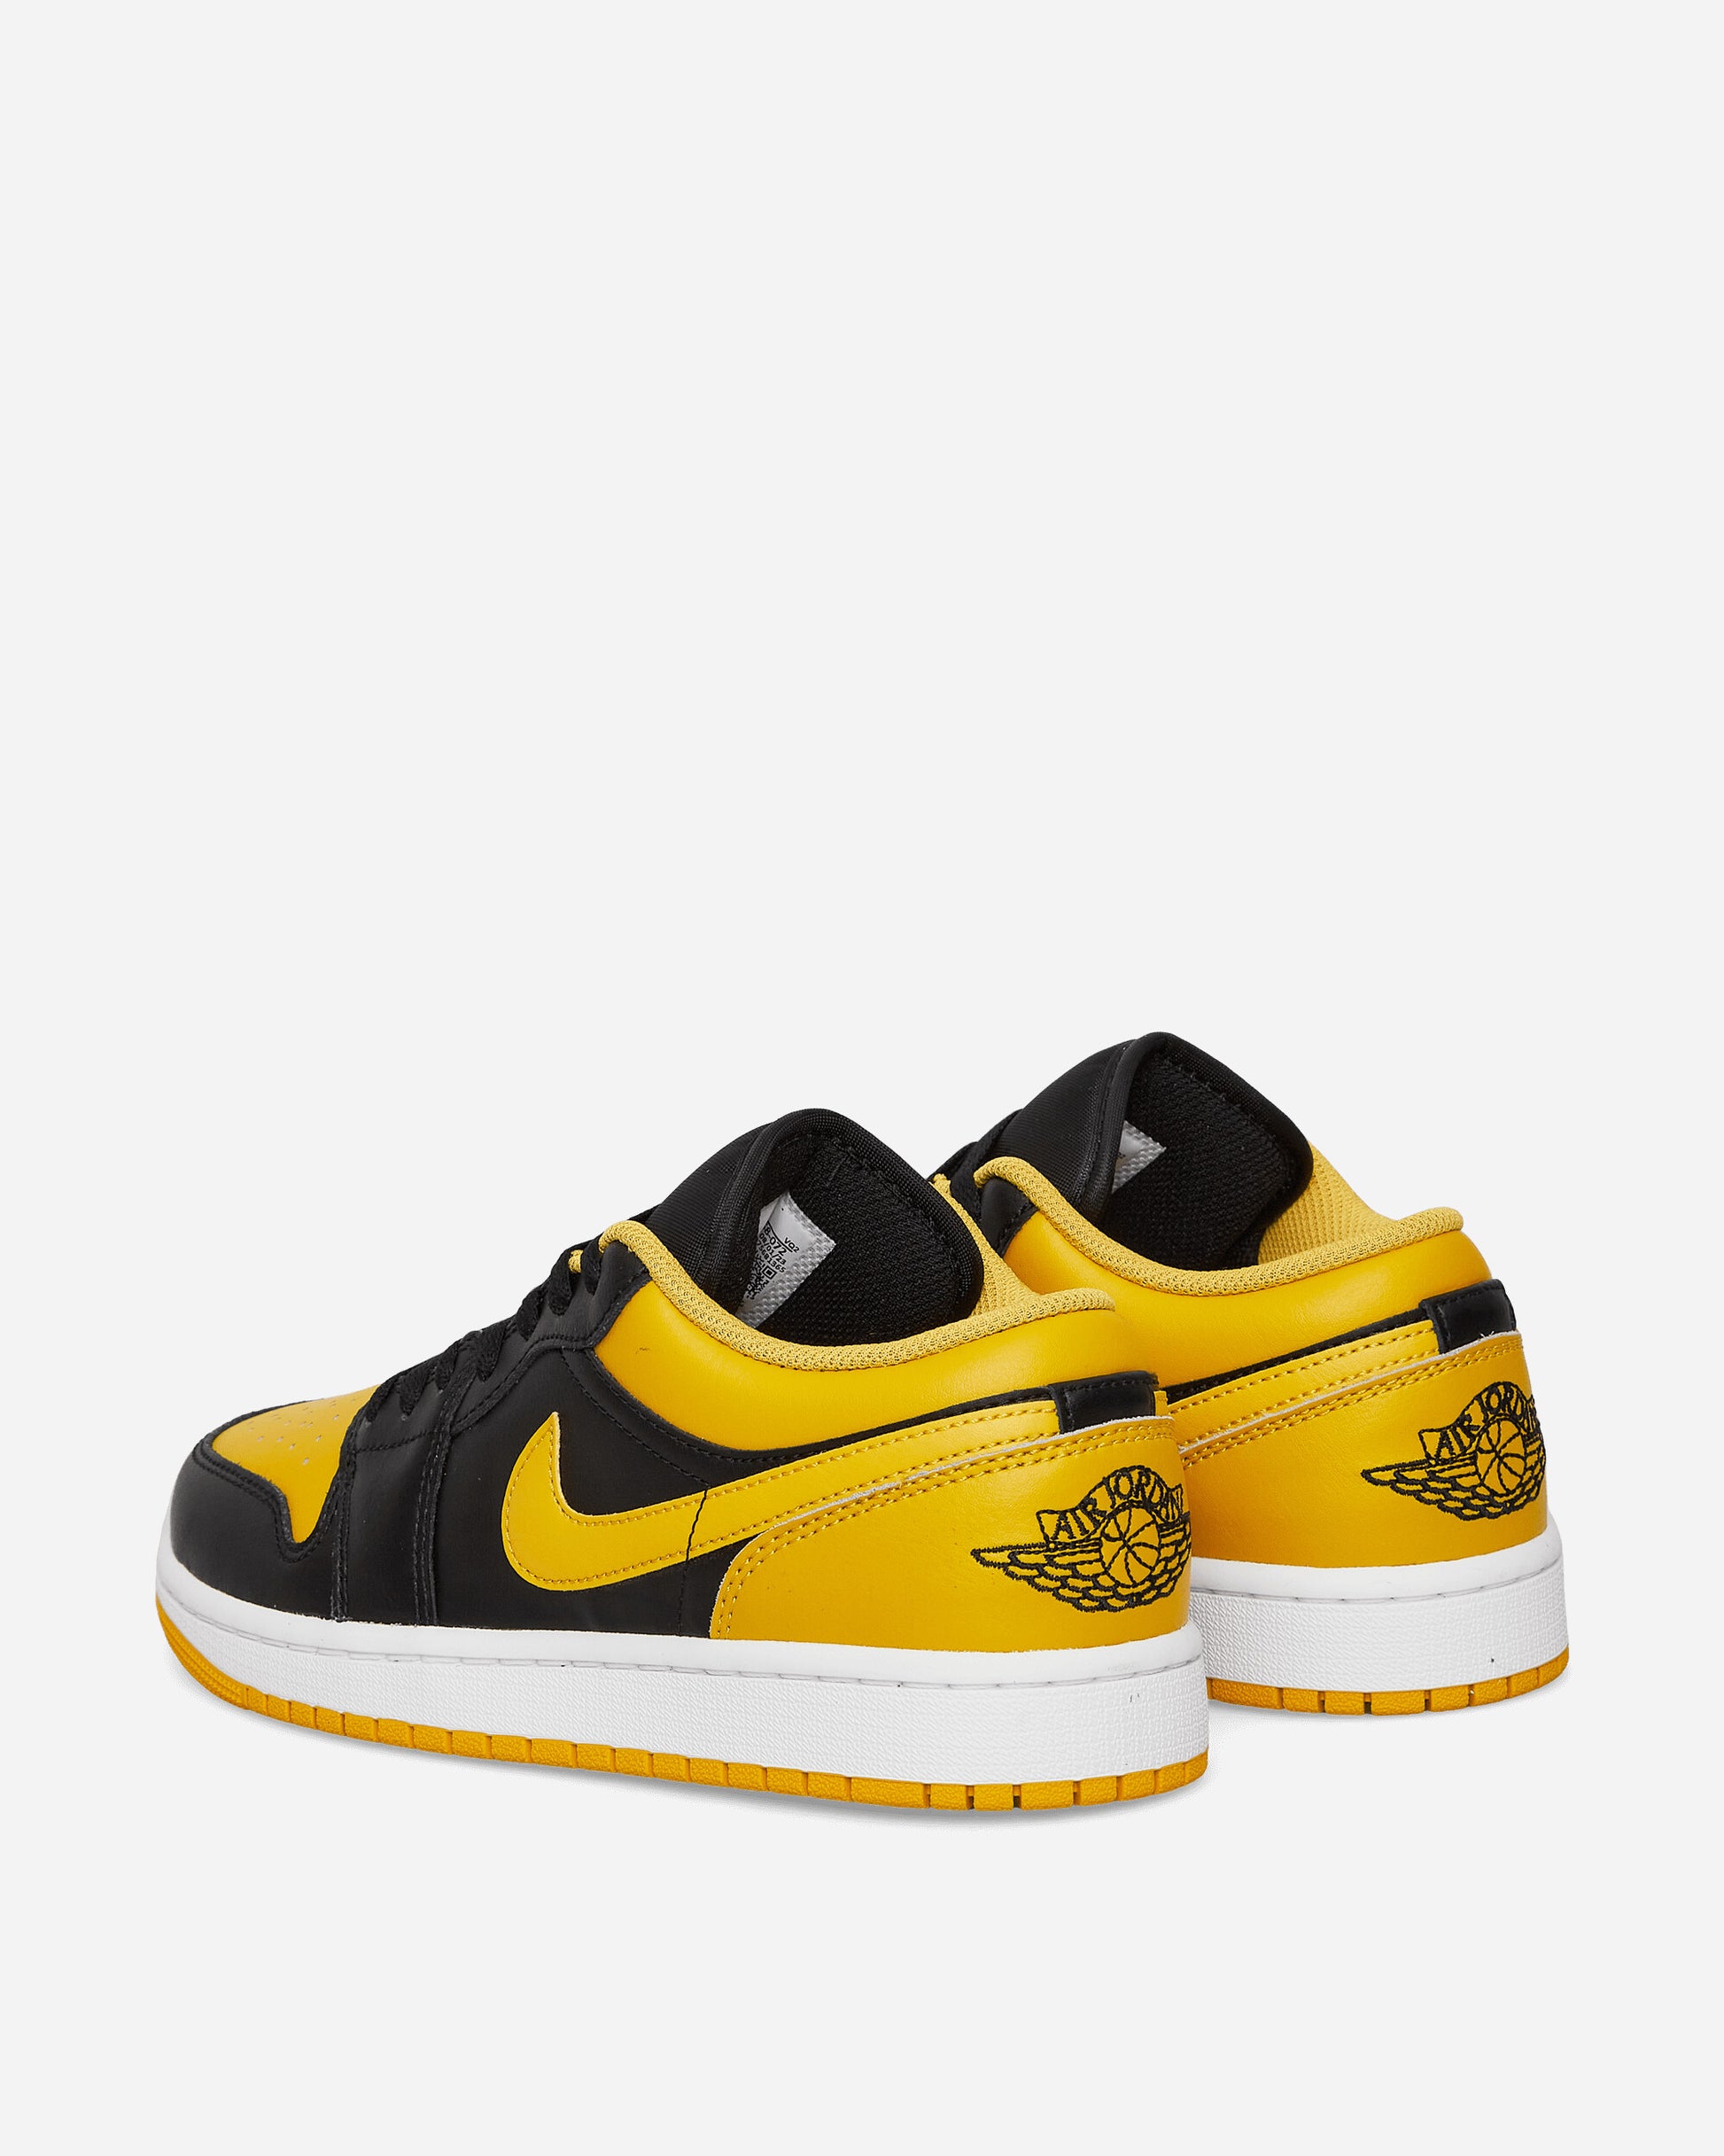 Nike Jordan Air Jordan 1 Low Black/Yellow Ochre Sneakers Low 553558-072